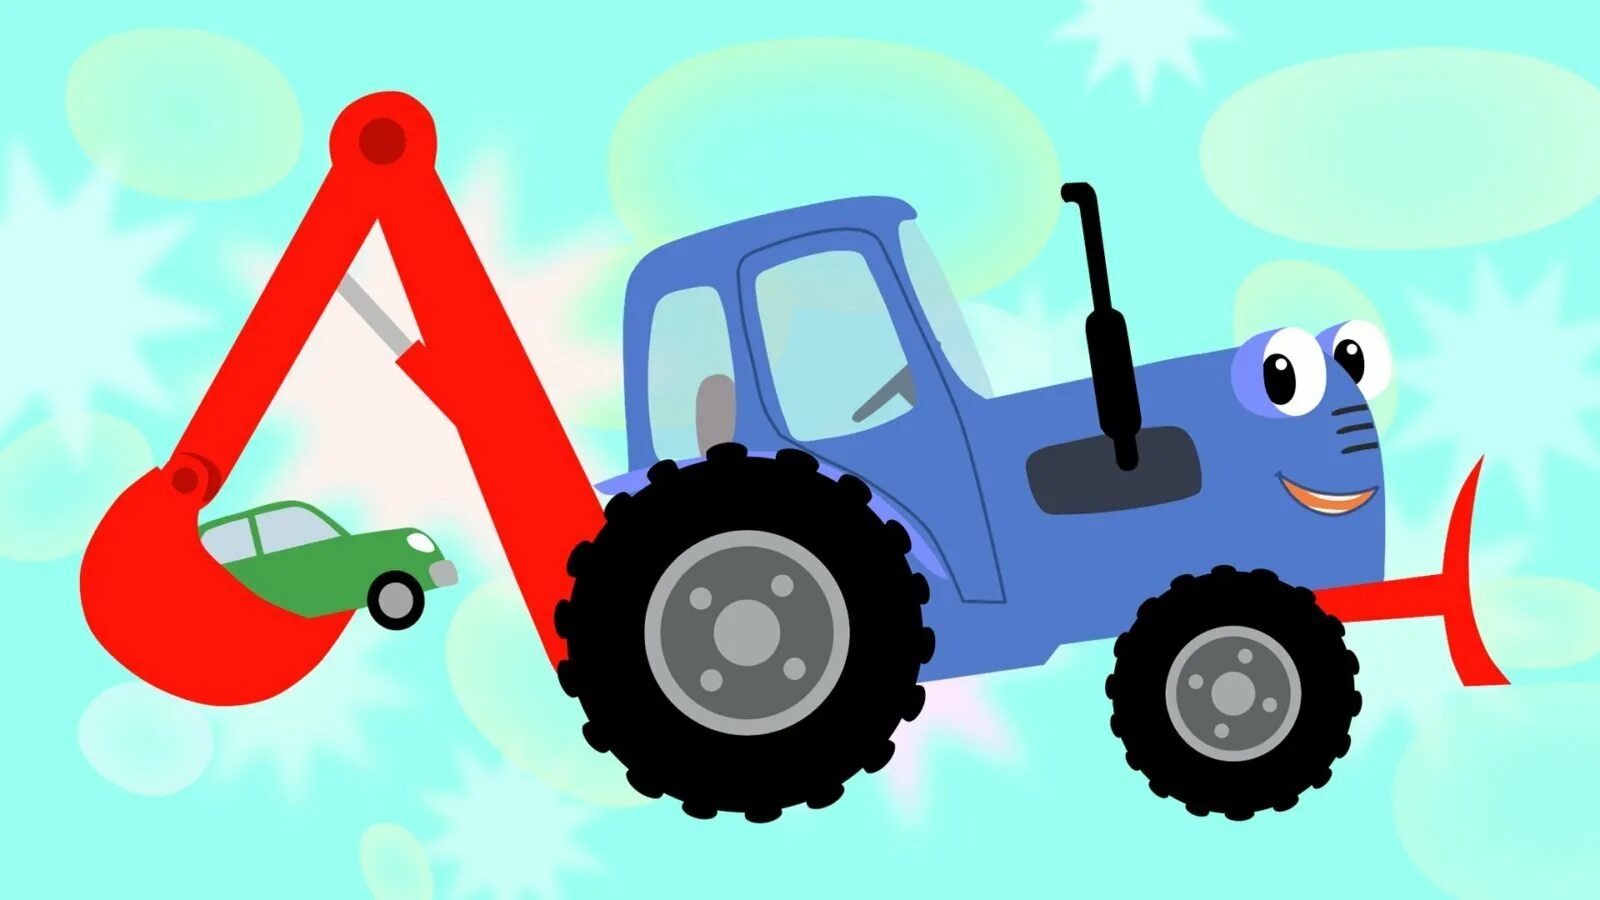 Синий трактор любимый. Синий трактор тр тр тр. Трактор Гоша трактор Гоша.